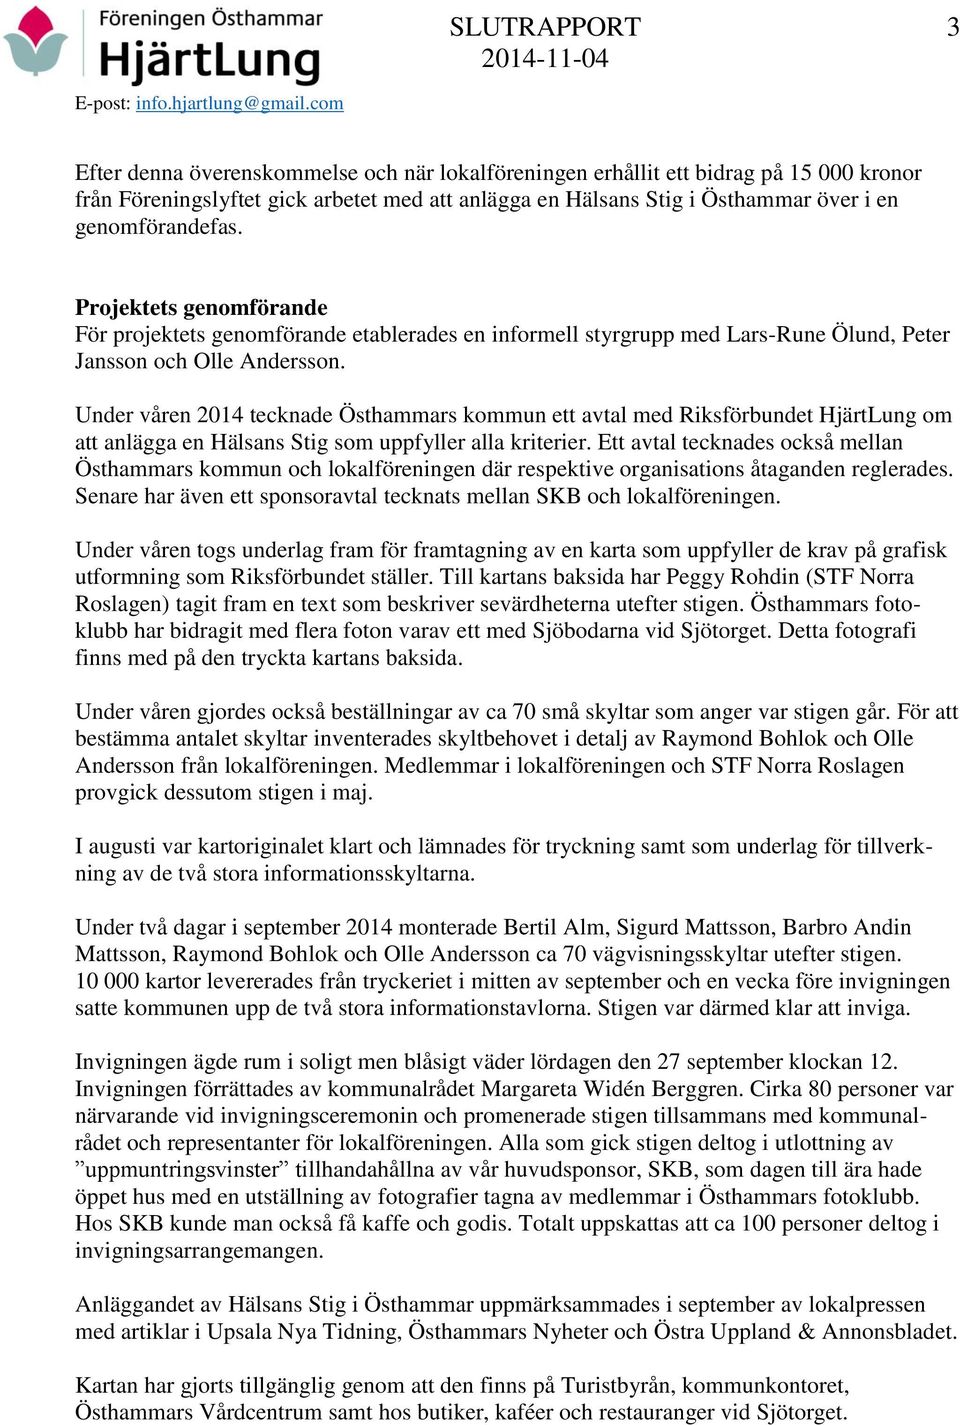 Under våren 2014 tecknade Östhammars kommun ett avtal med Riksförbundet HjärtLung om att anlägga en Hälsans Stig som uppfyller alla kriterier.